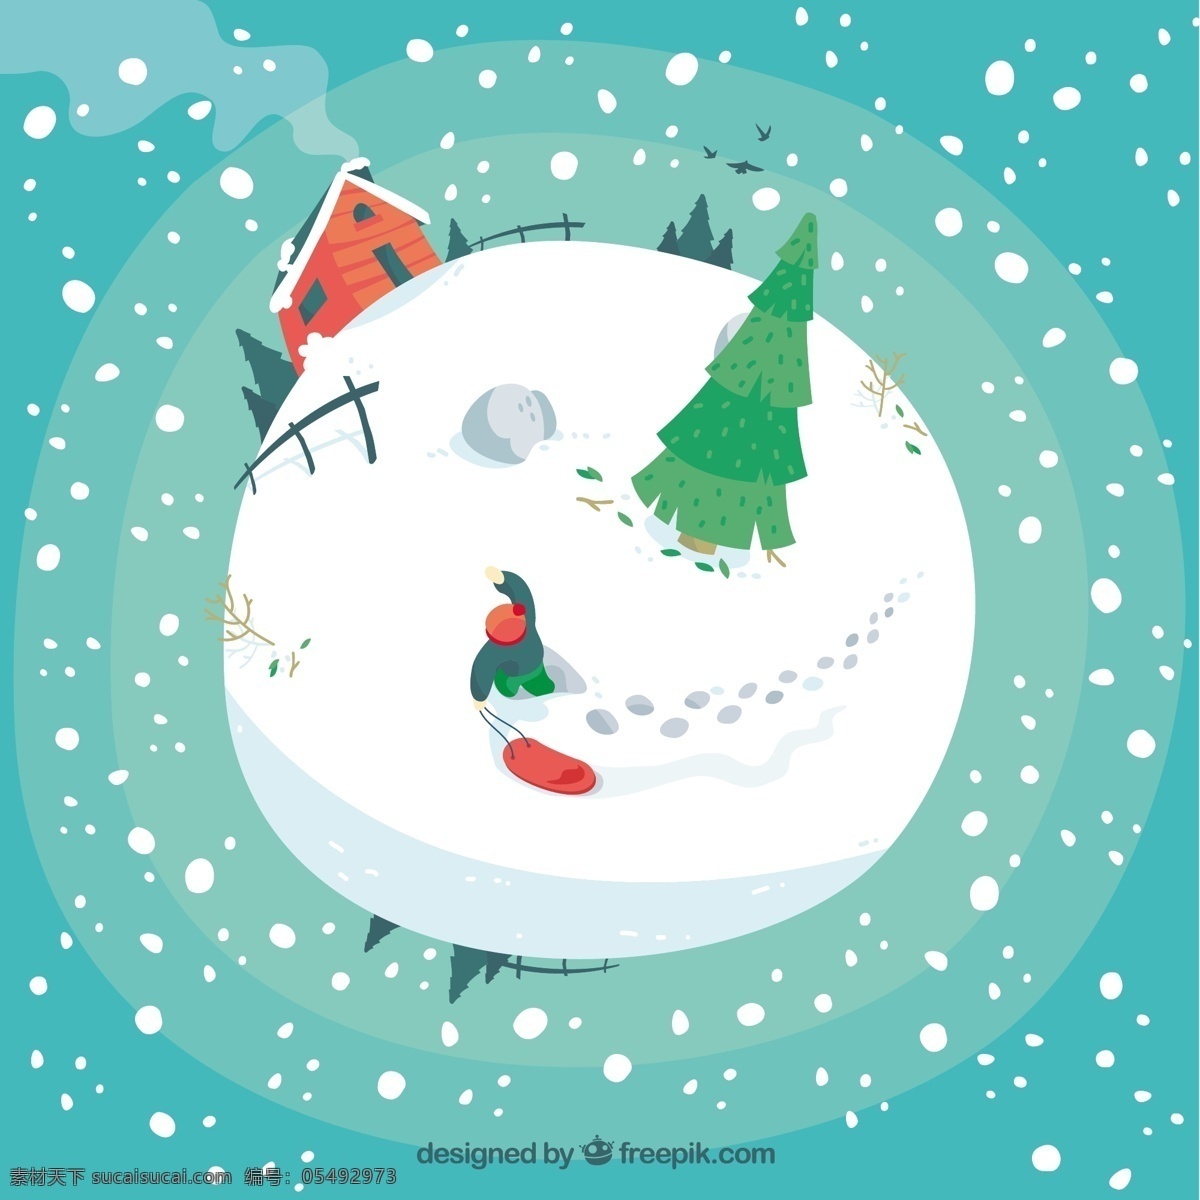 雪球的插图 圣诞节 自然 雪 圣诞快乐 冬天快乐 林 庆祝的节日 节日快乐 插图 季节 节日 快乐 十二月 雪球 青色 天蓝色